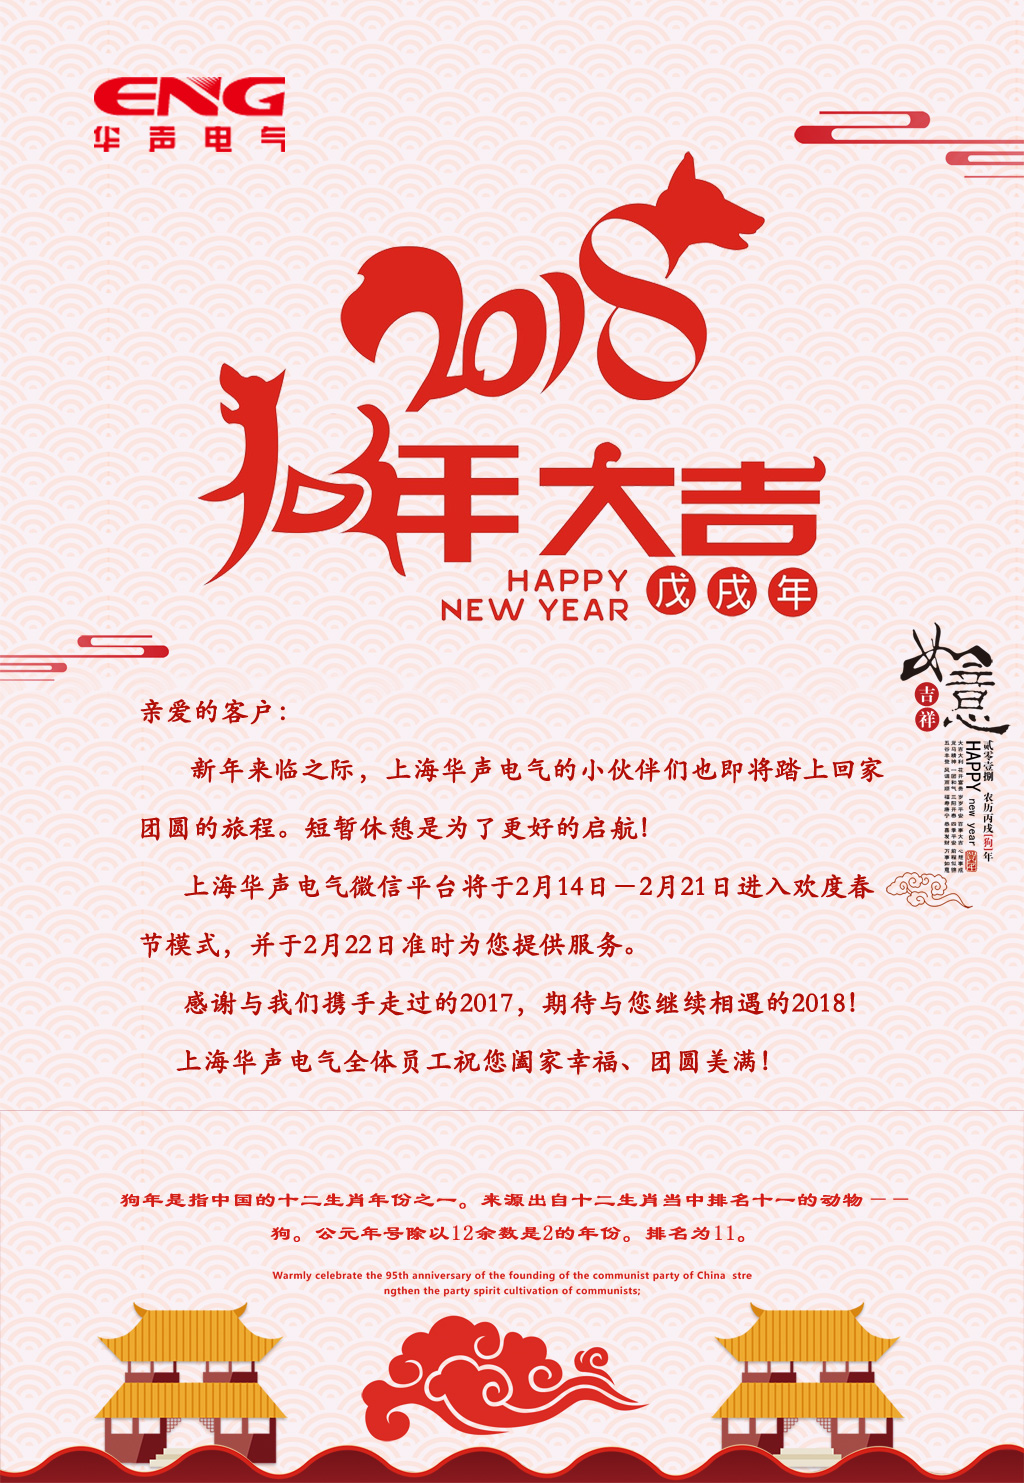 新年来临之际，上海华声电气全体员工祝您阖家幸福、团圆美满！